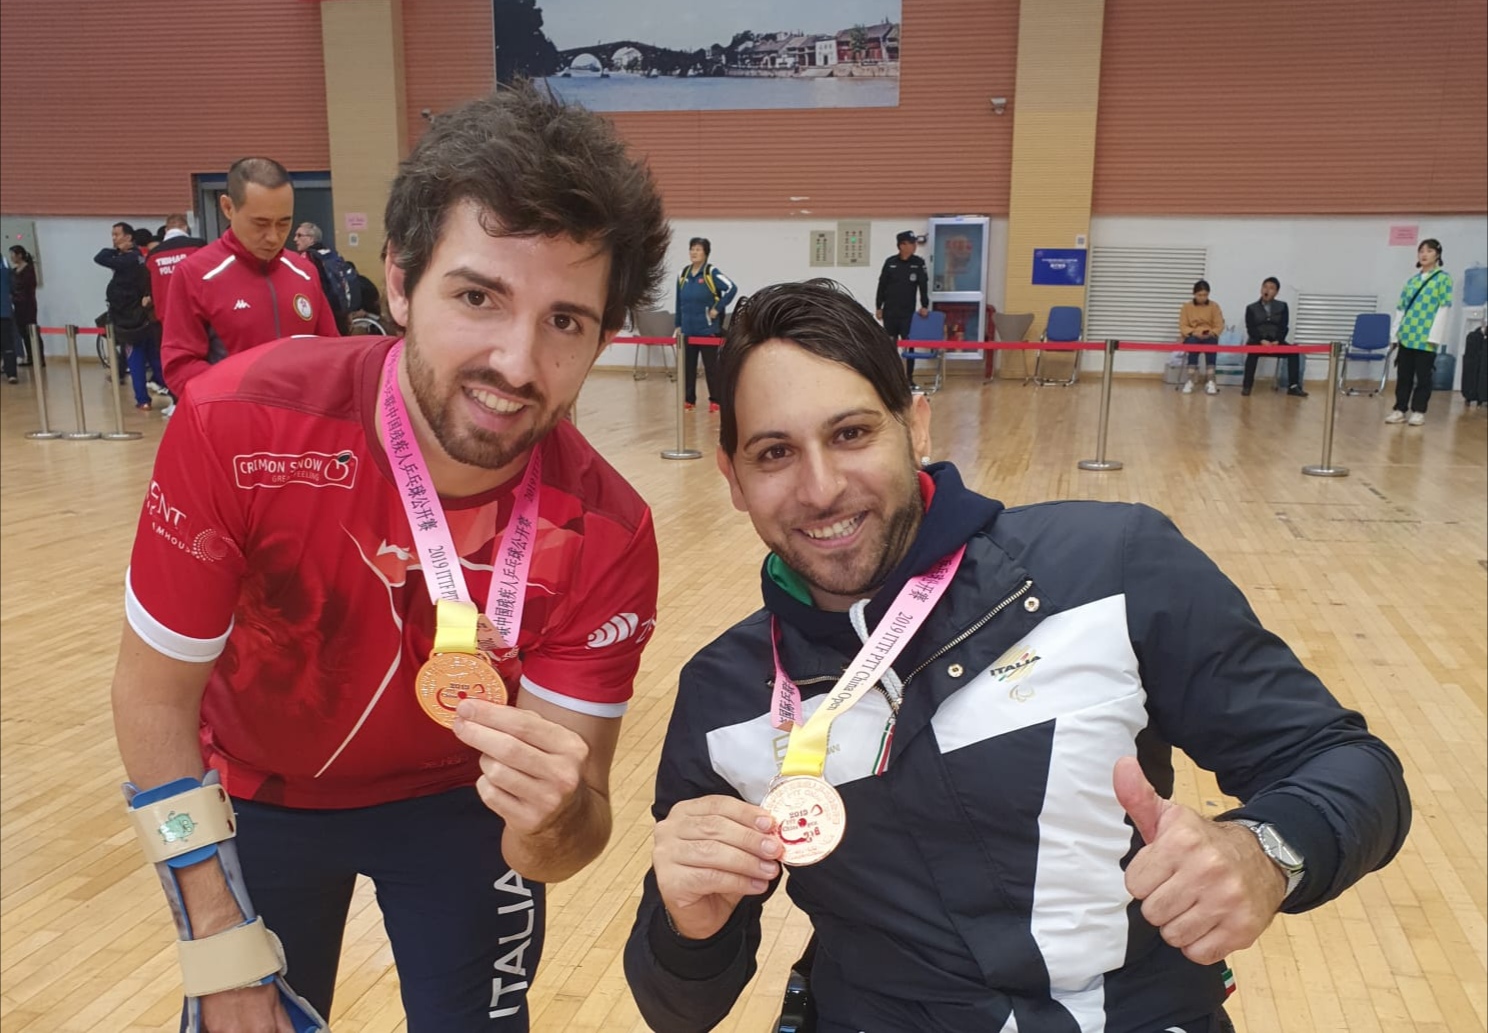 Samuel De Chiara e Raimondo Alecci bronzi al Para China Open 2019